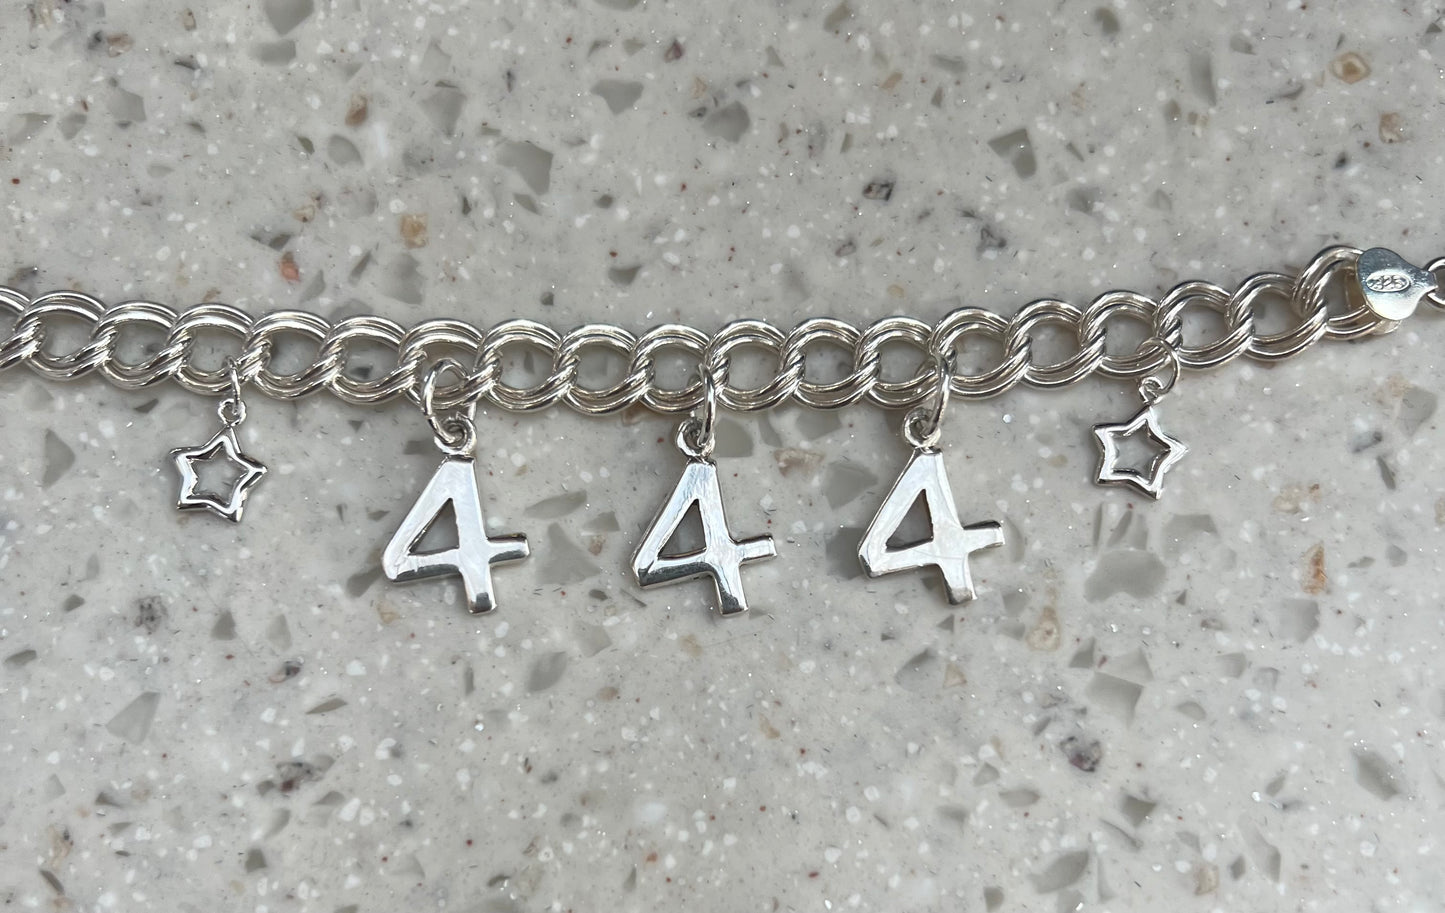 444 Angel Number Charm Bracelet 7”